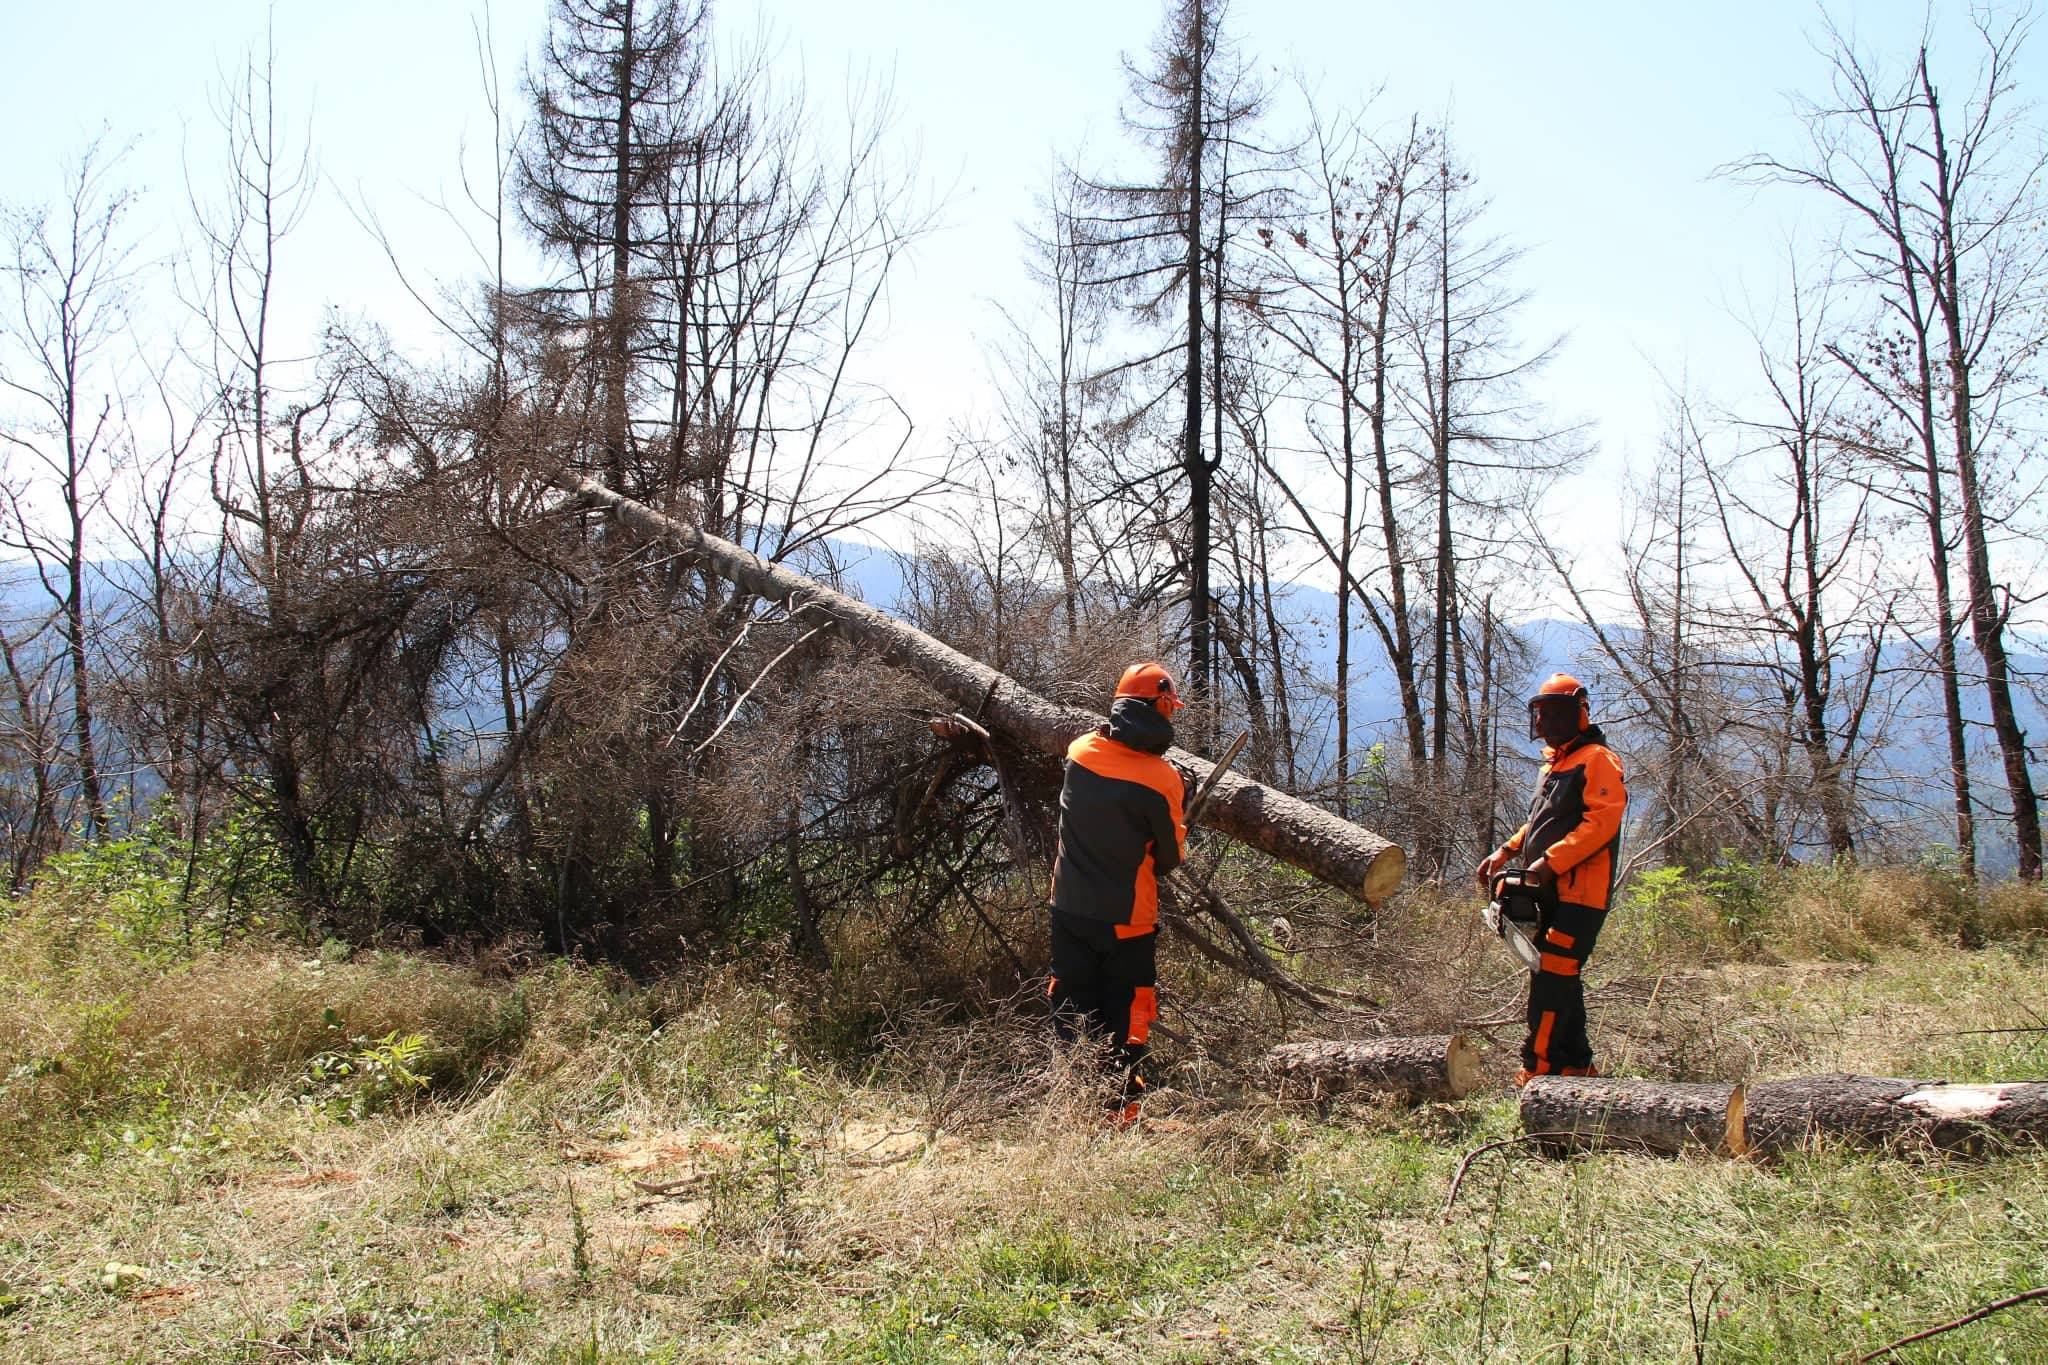 ბორჯომში, სოფელ დაბაში, 2008 და 2017 წლის აგვისტოში  ხანძრით დაზიანებული ტყის აღდგენა სექტემბერში დაიწყება